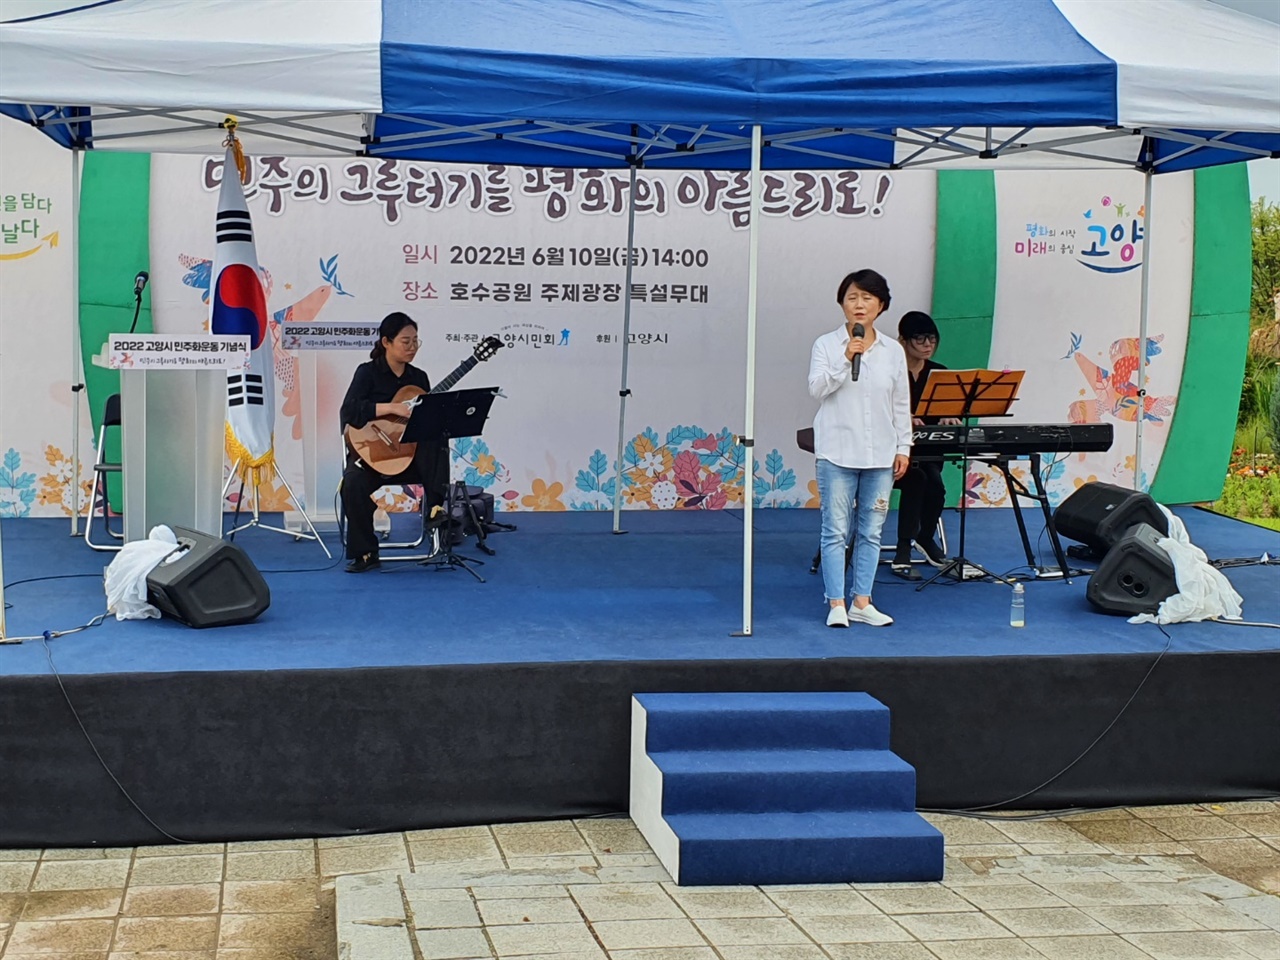 고양시 민주화운동기념에서 윤선애 민중가요 가수가 노래를 부르고 있다.